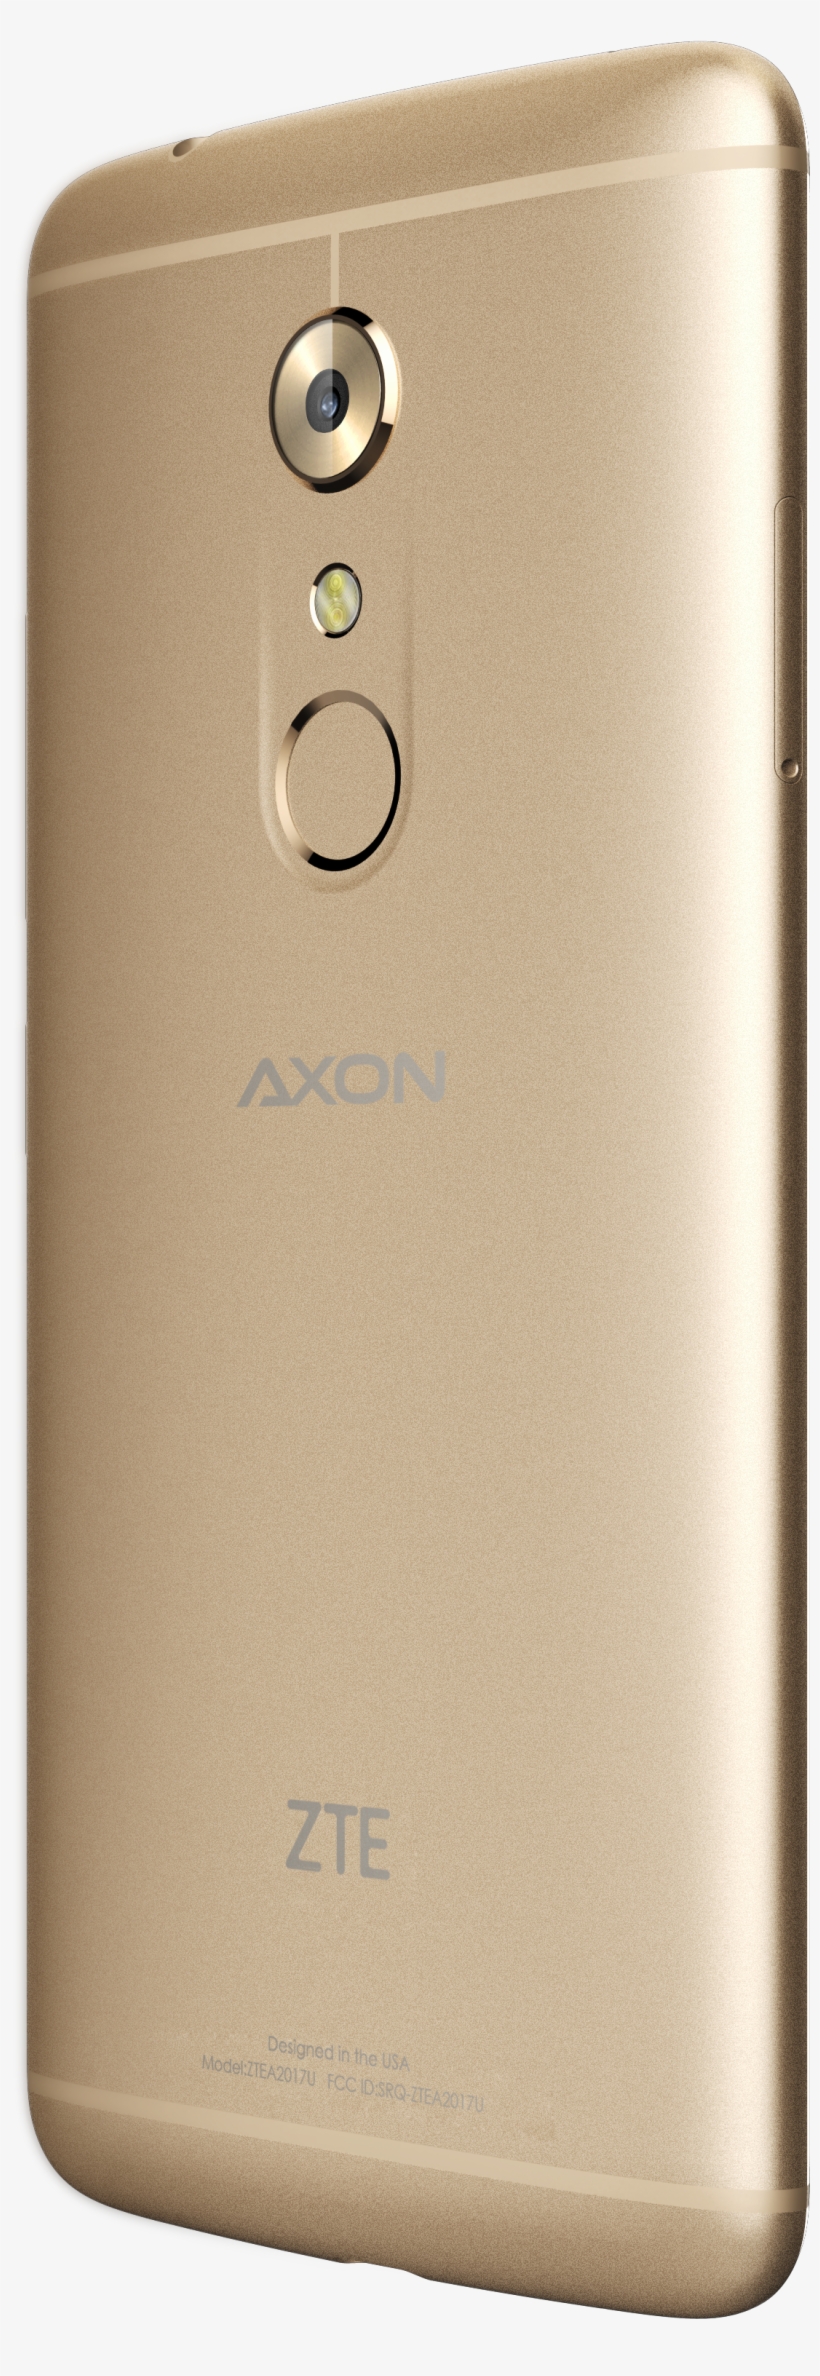 Axon 7 Gold Back Left - Kokuyo Color Tag Loose Leaf Holder Bi-color B5, transparent png #3779258